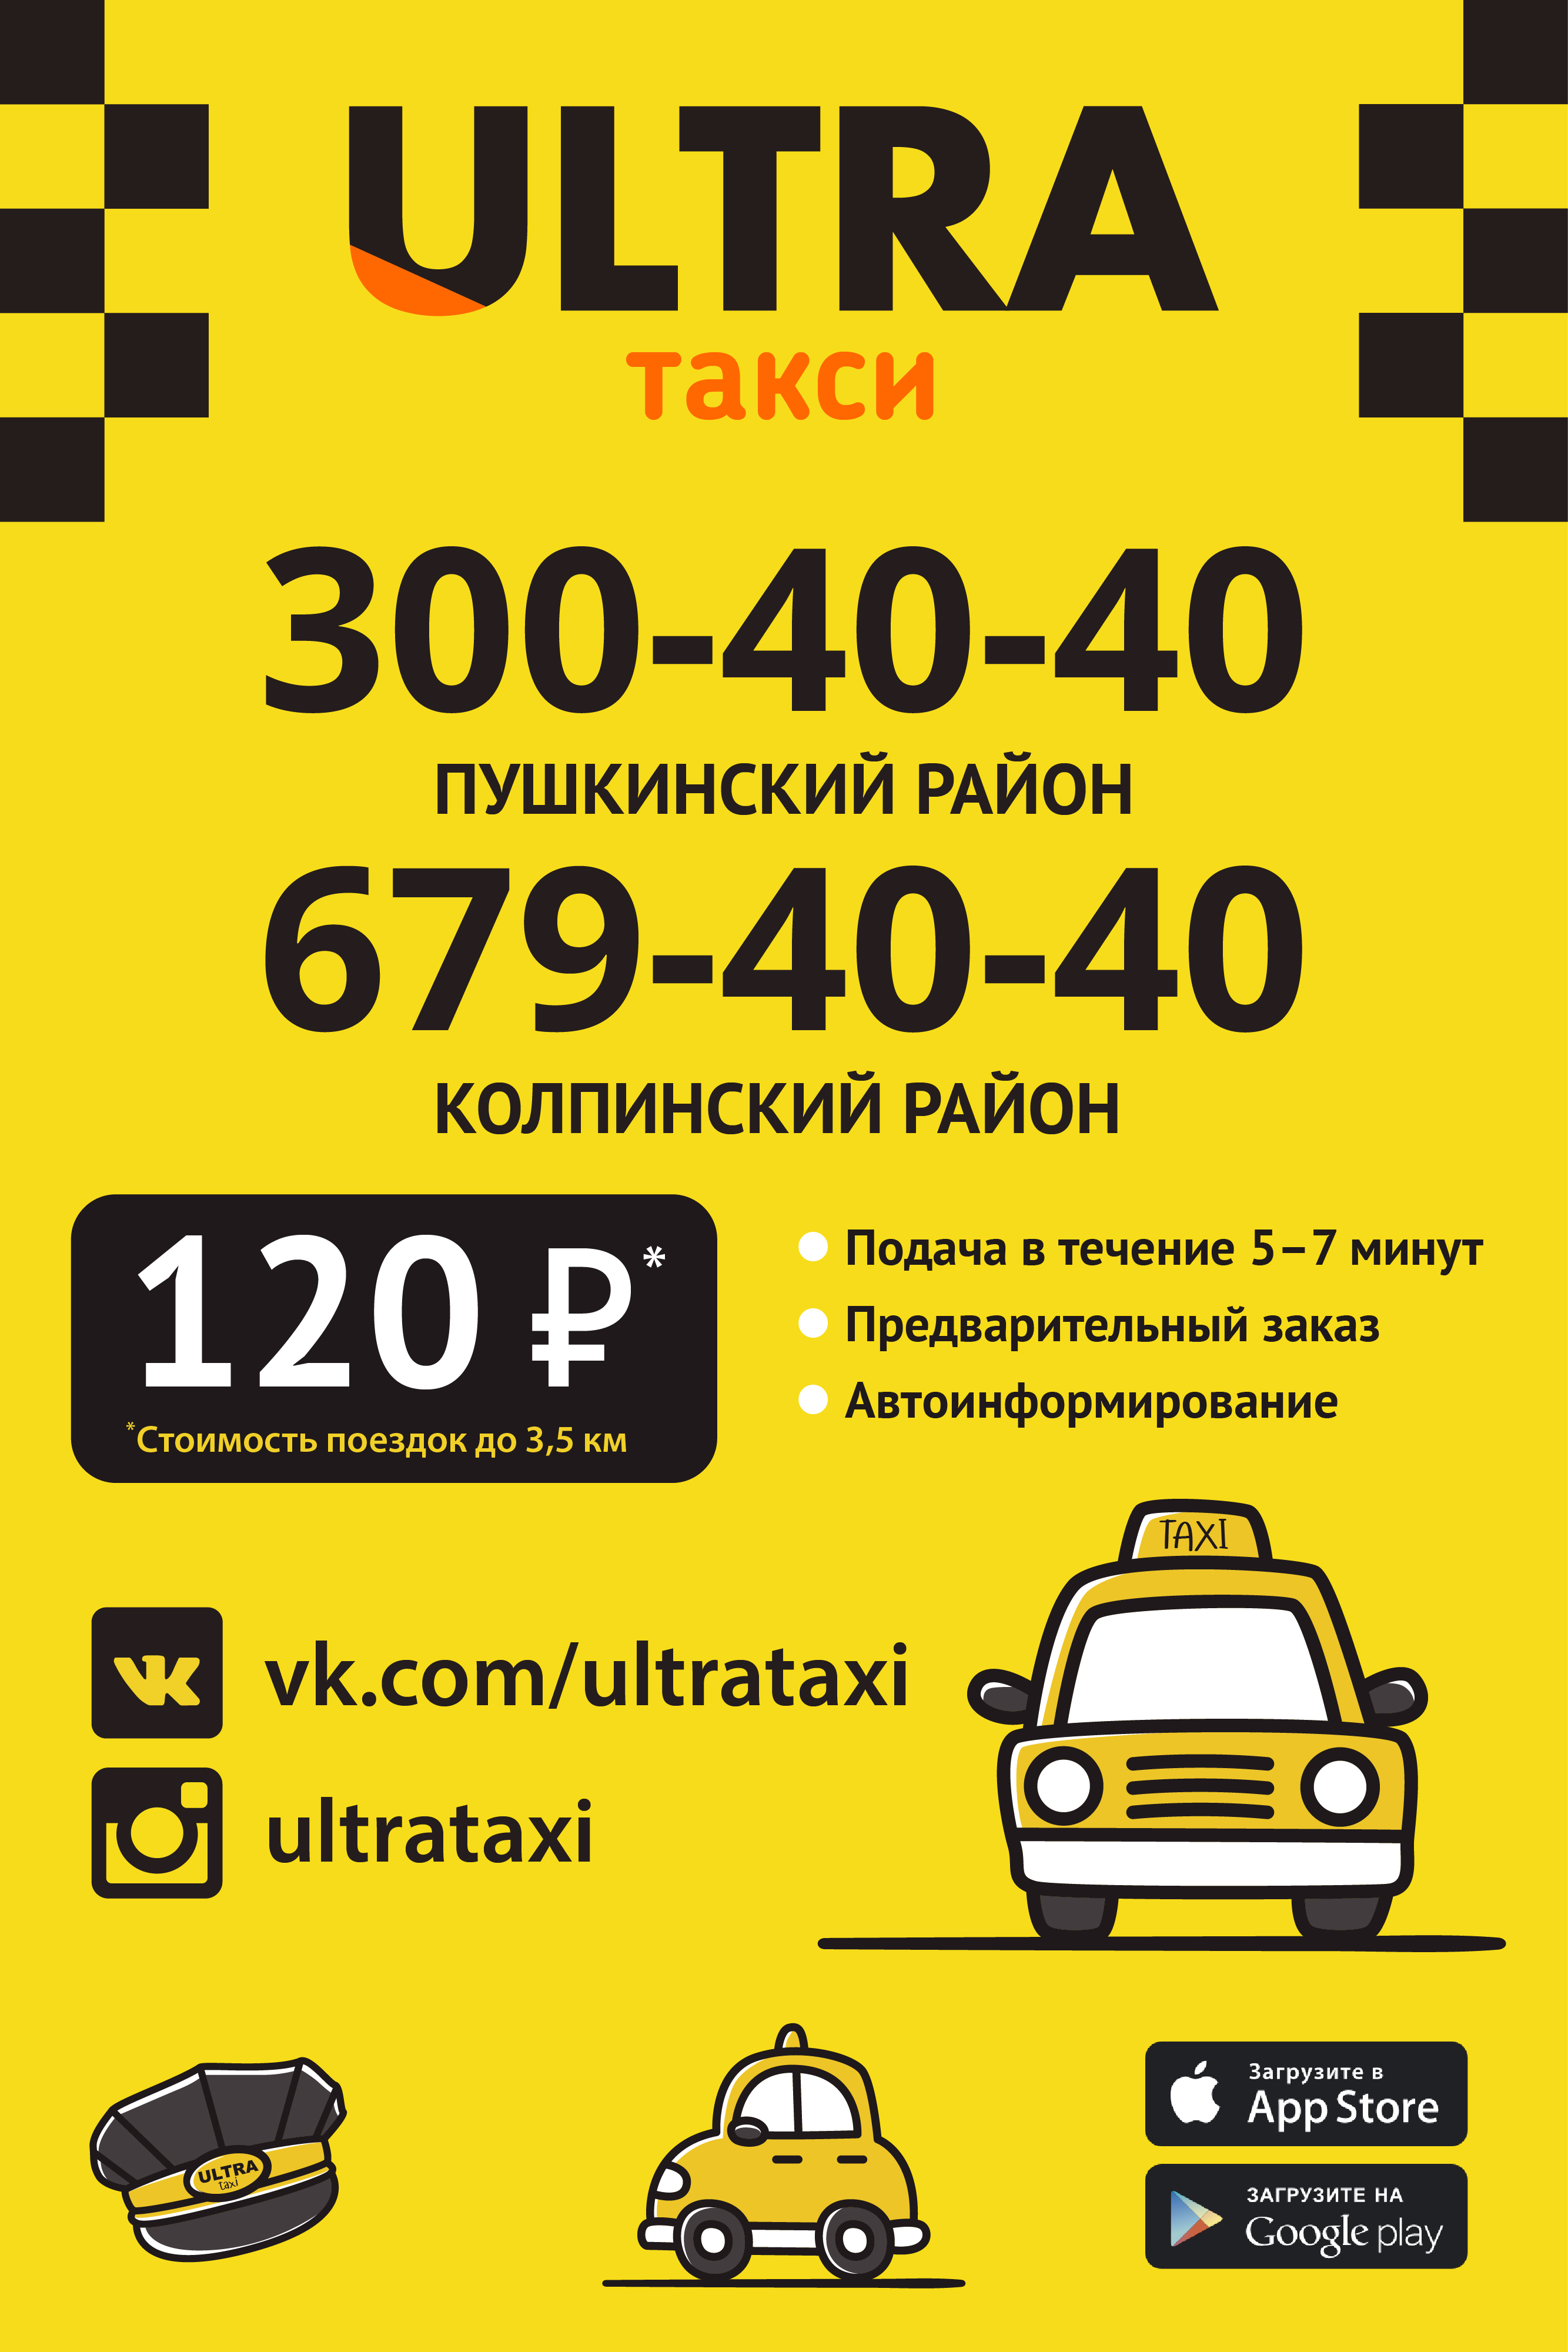 Номер телефона такси в саратове. Номер такси. Номера таксистов. Номер телефона такси. Номер телефона таксиста.